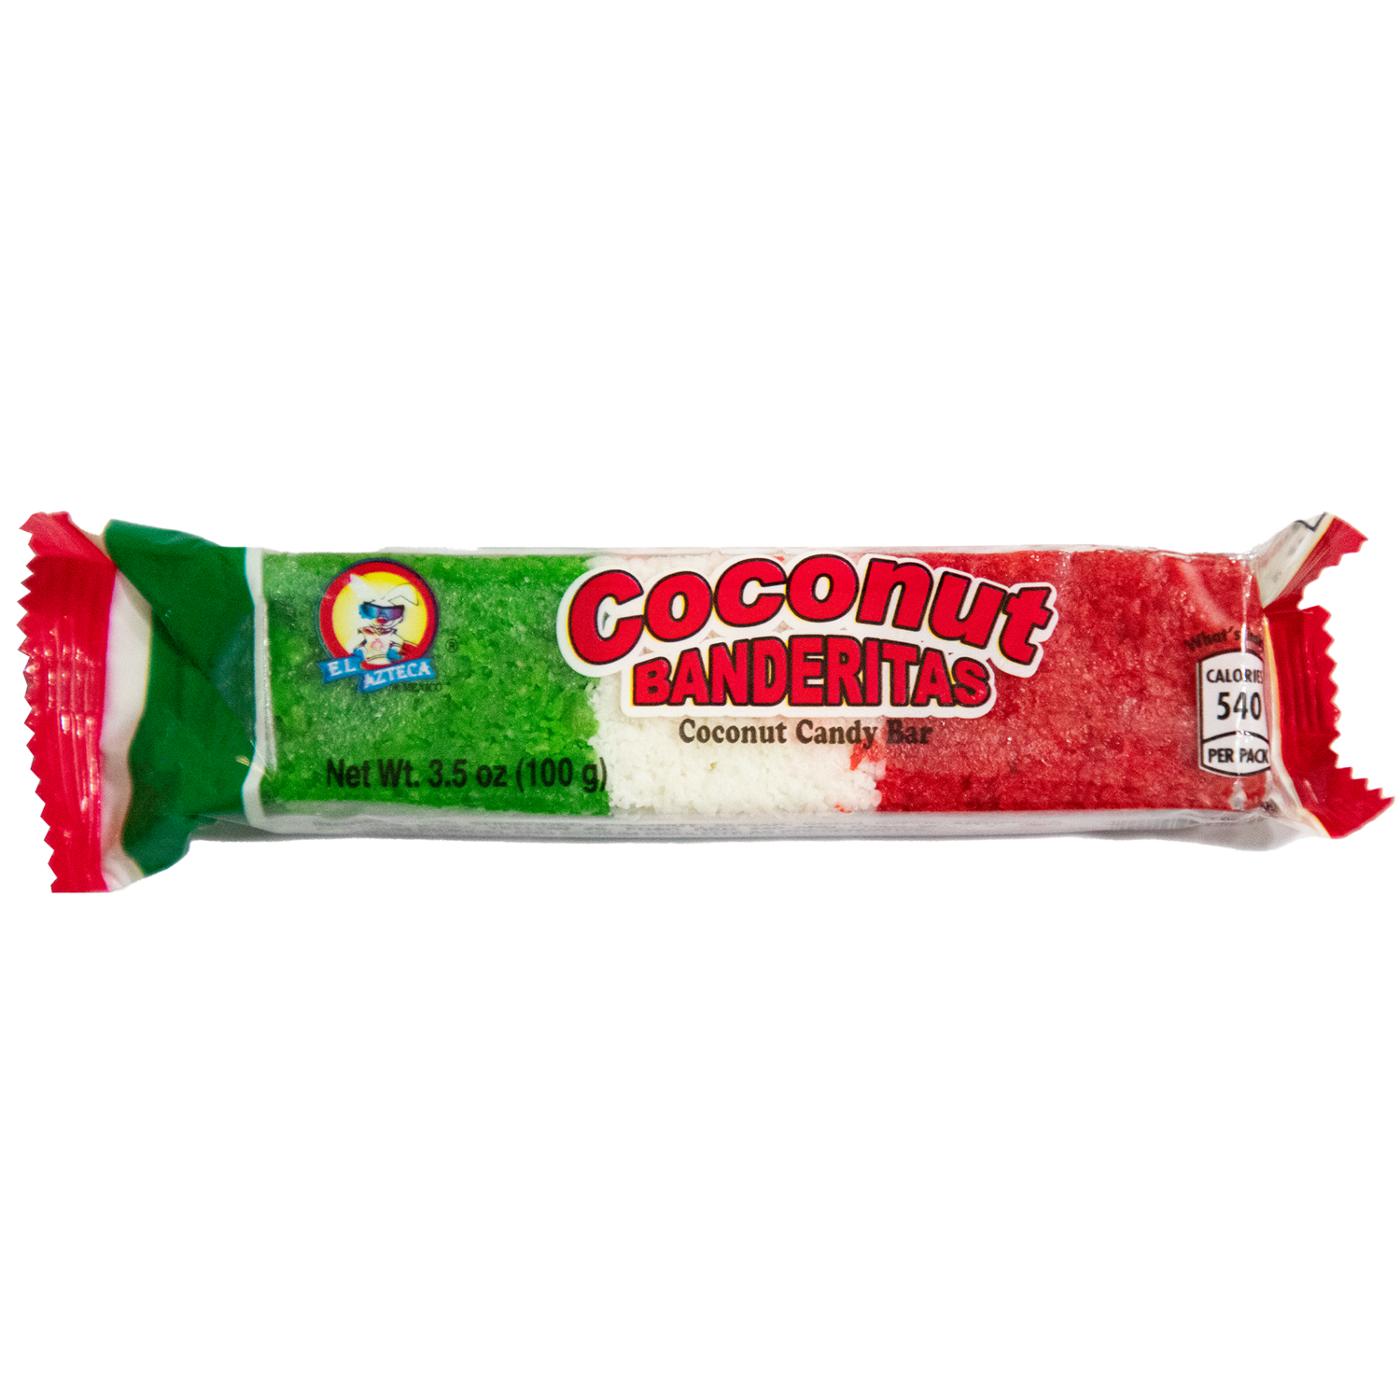 El Azteca Coconut Banderitas Candy Bar; image 1 of 2